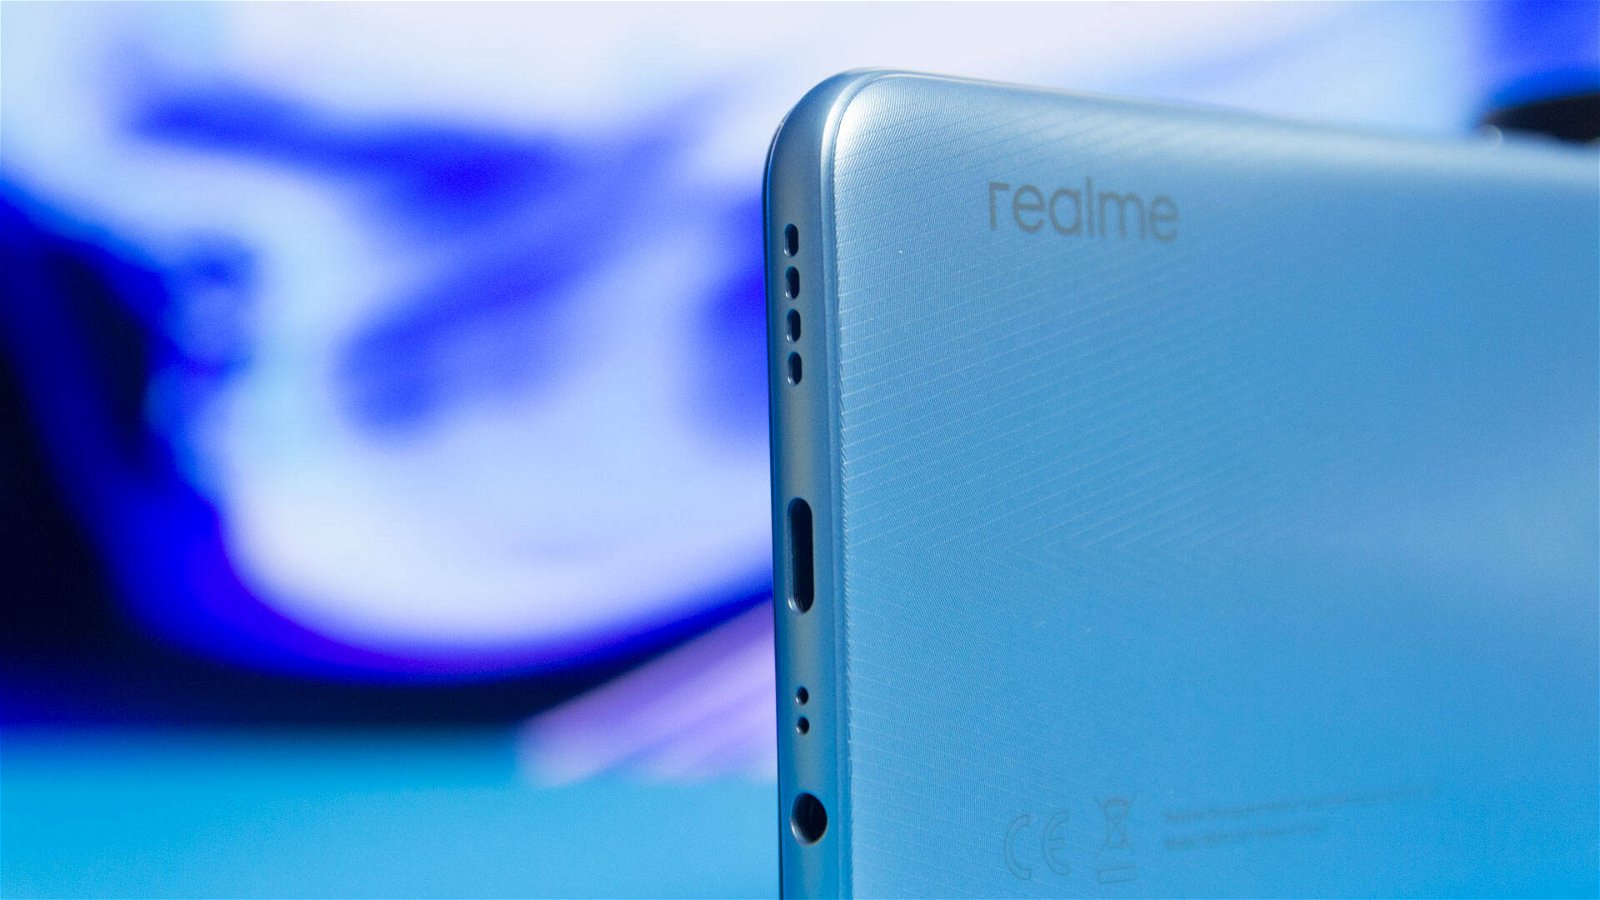 Immagine di Realme: spuntano le prime immagini del nuovo smartphone V13